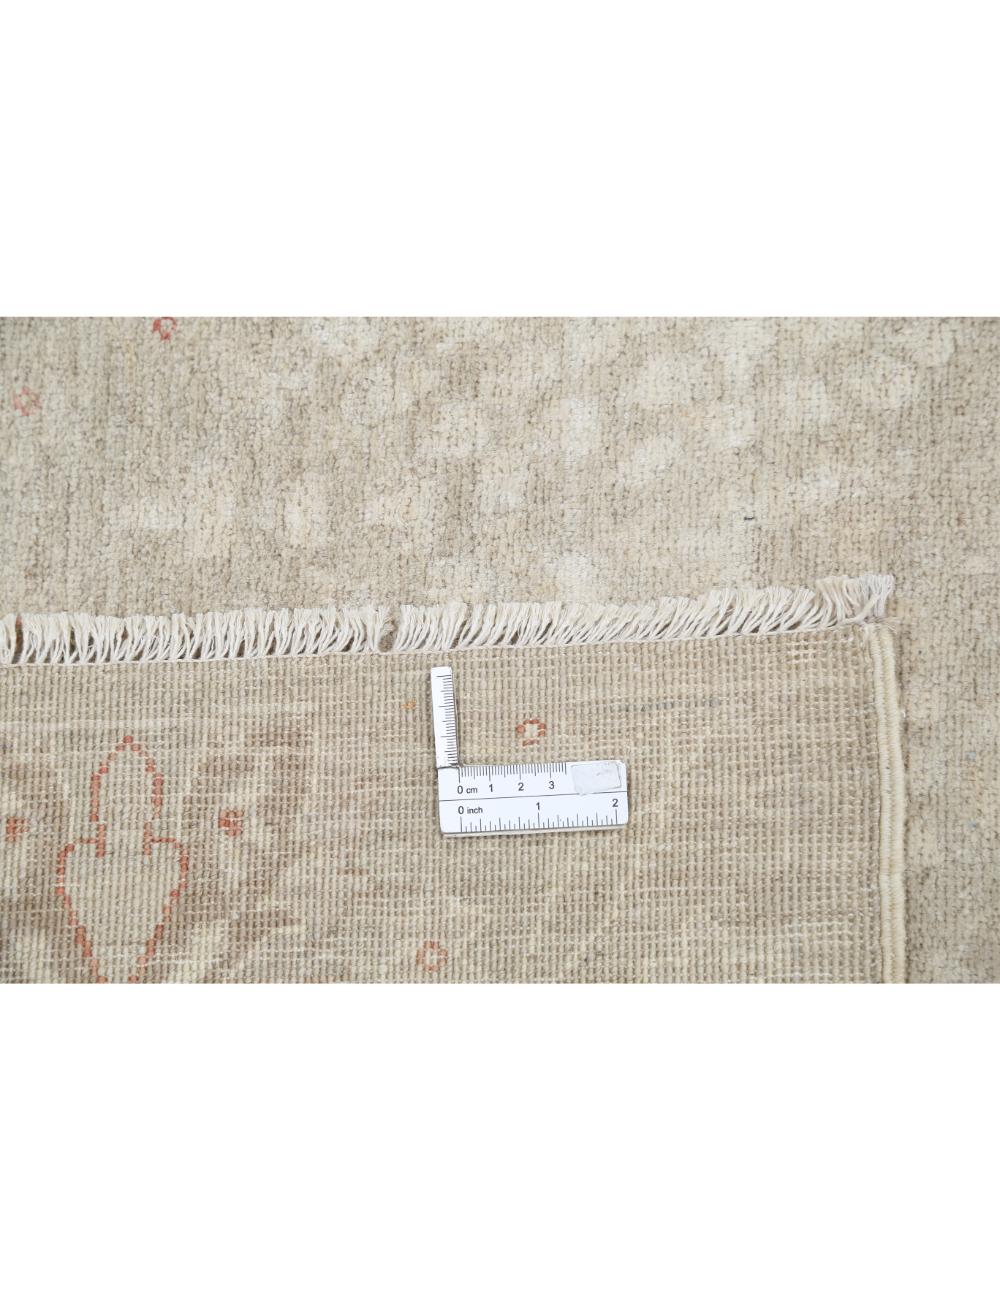 Hand Knotted Fine Artemix Wool Rug - 8'5'' x 11'1'' Arteverk Arteverk Rugs